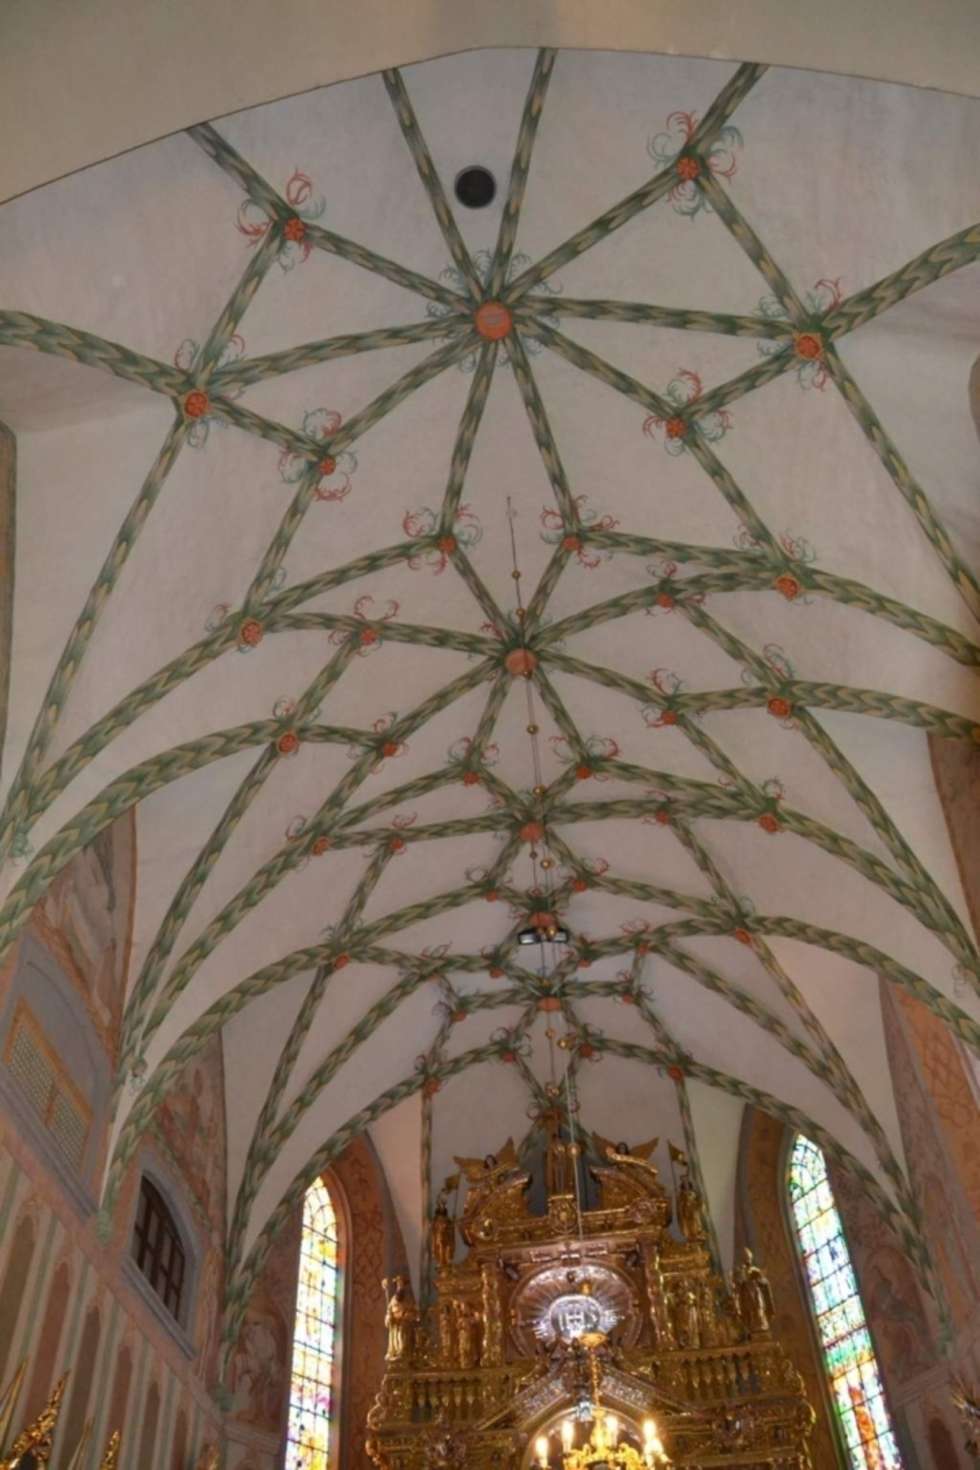  Parafię rzymskokatolicką p.w. Wniebowzięcia NMP i św. Augustyna w Kraśniku nagrodzono za konserwację prezbiterium kościoła parafialnego. 